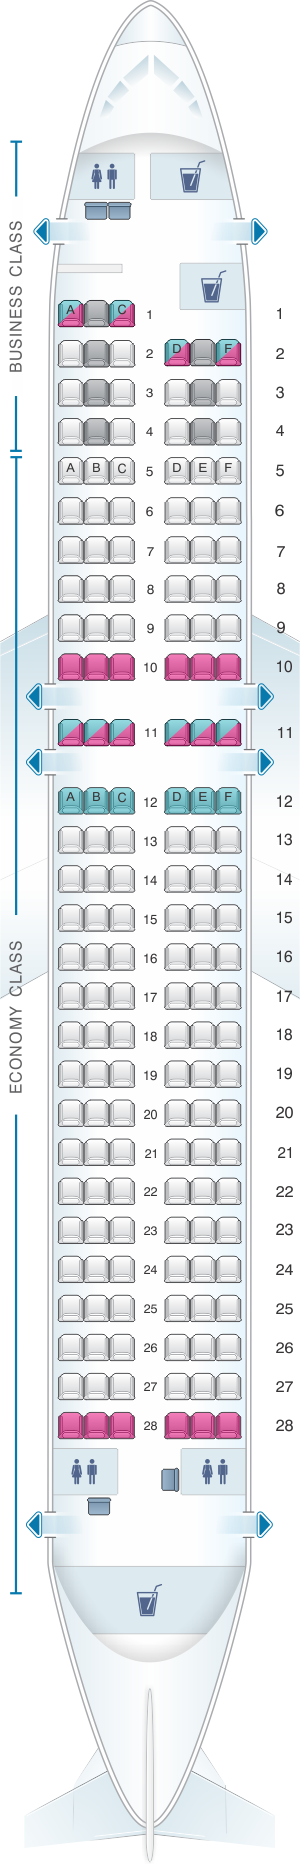 Plan de cabine Finnair Airbus A320 | SeatMaestro.fr